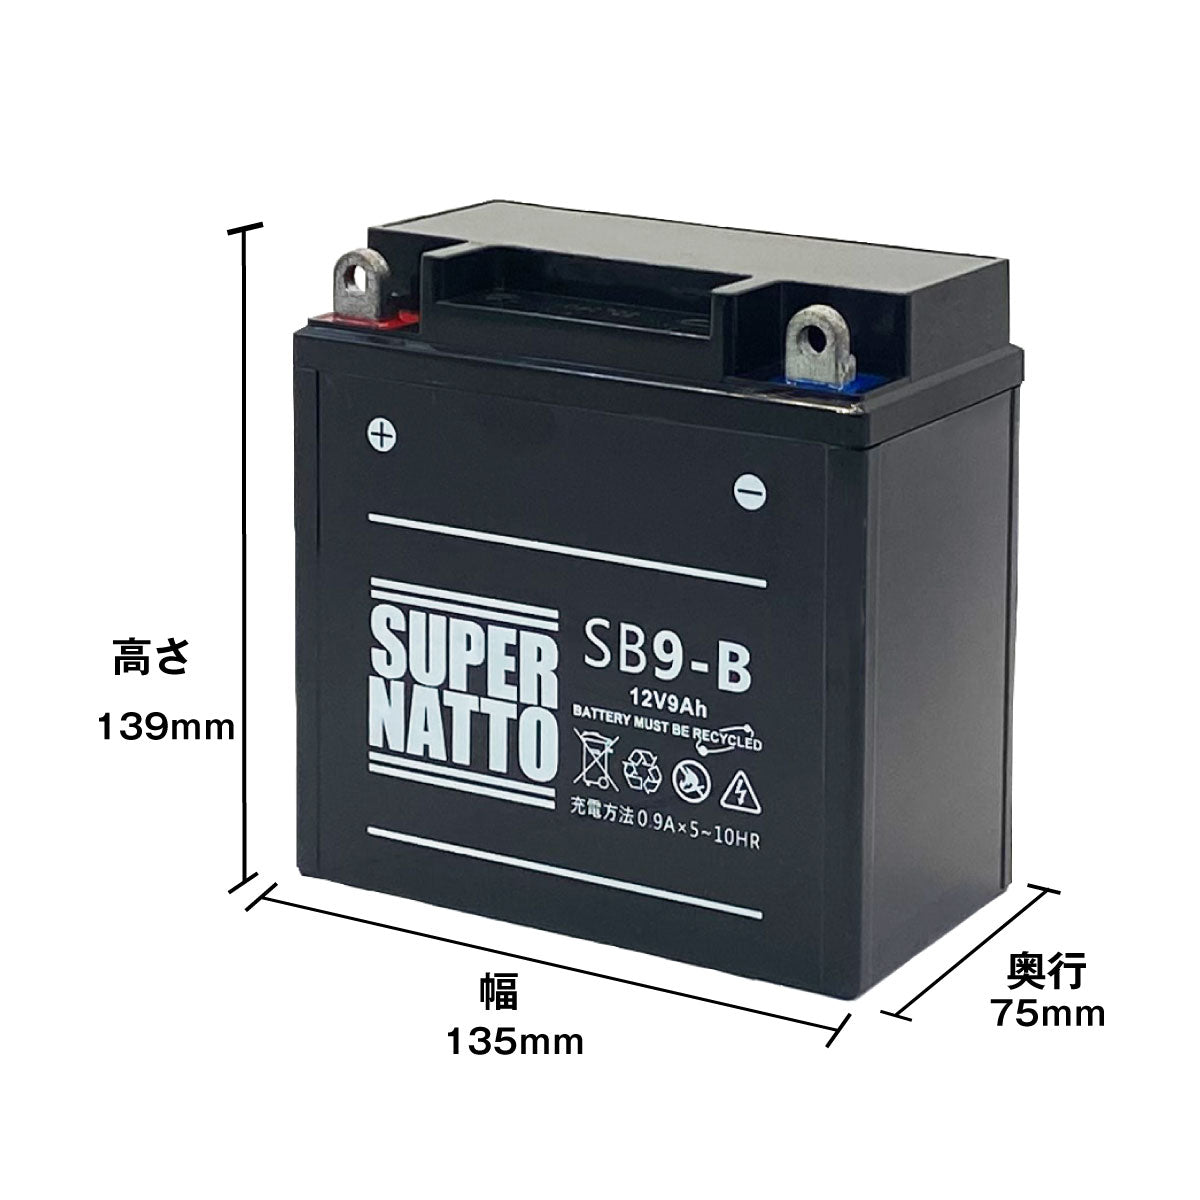 スーパーナット SB9-B （シールド型） バイク用バッテリー – バッテリーストア.com